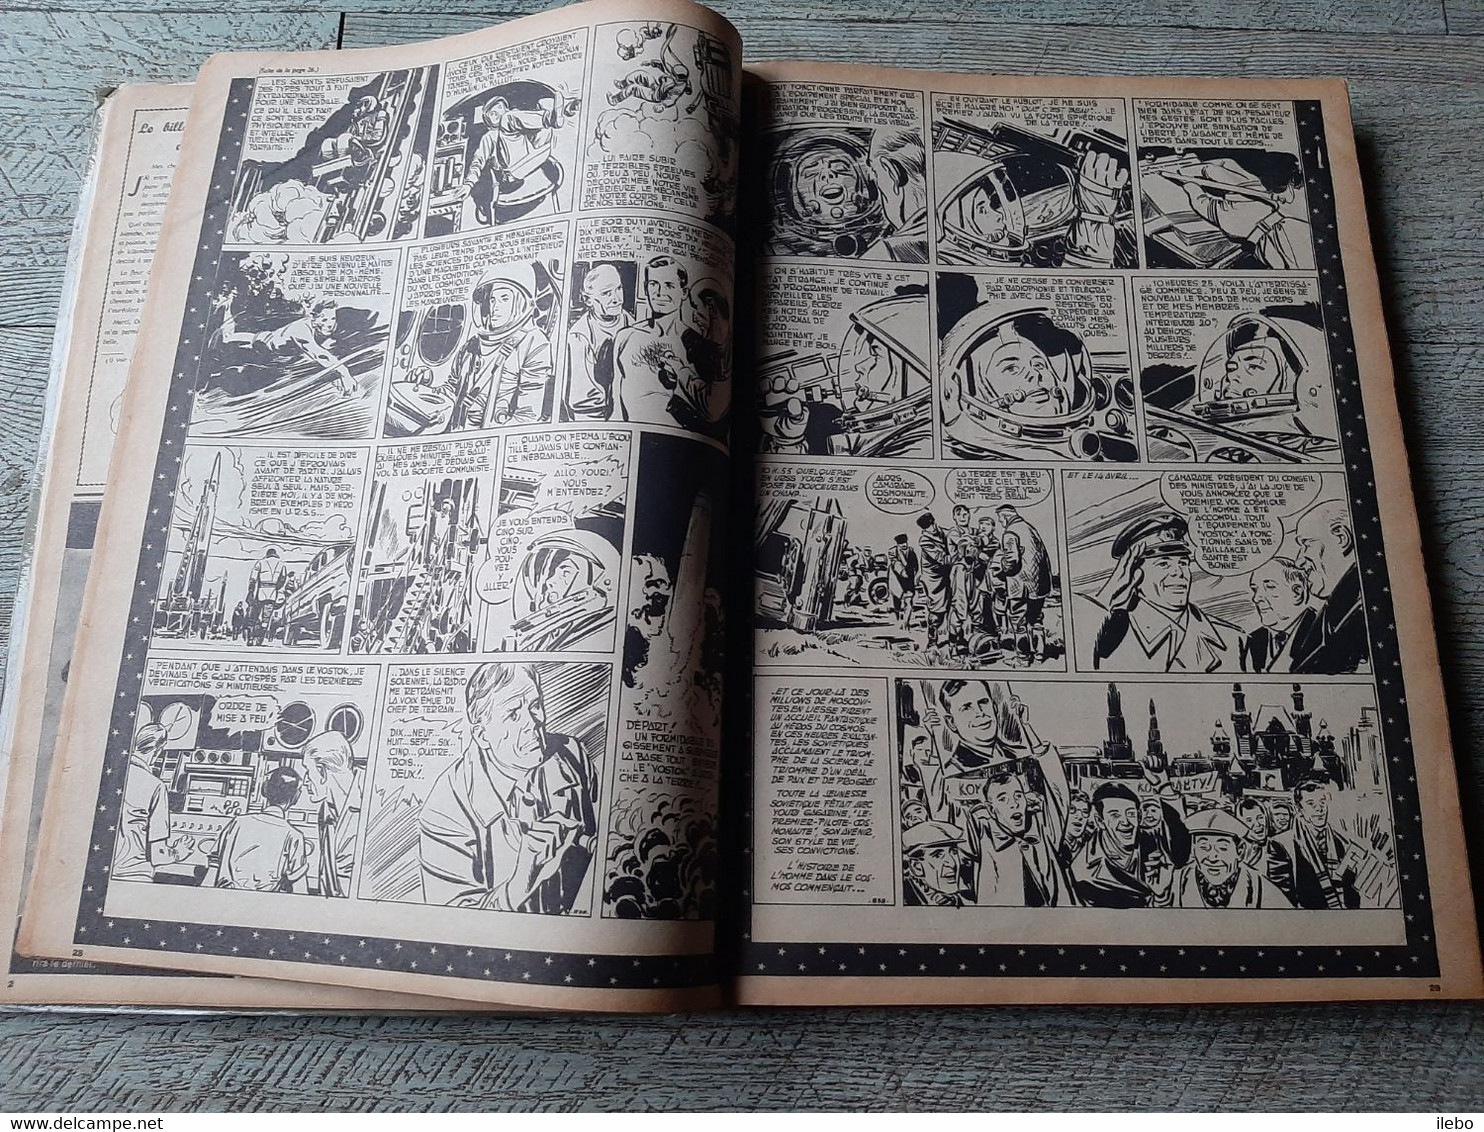 reliure éditeur N° 7 album vaillant 1961 du numéro 837 à 849 illustré jeunesse bande dessinée